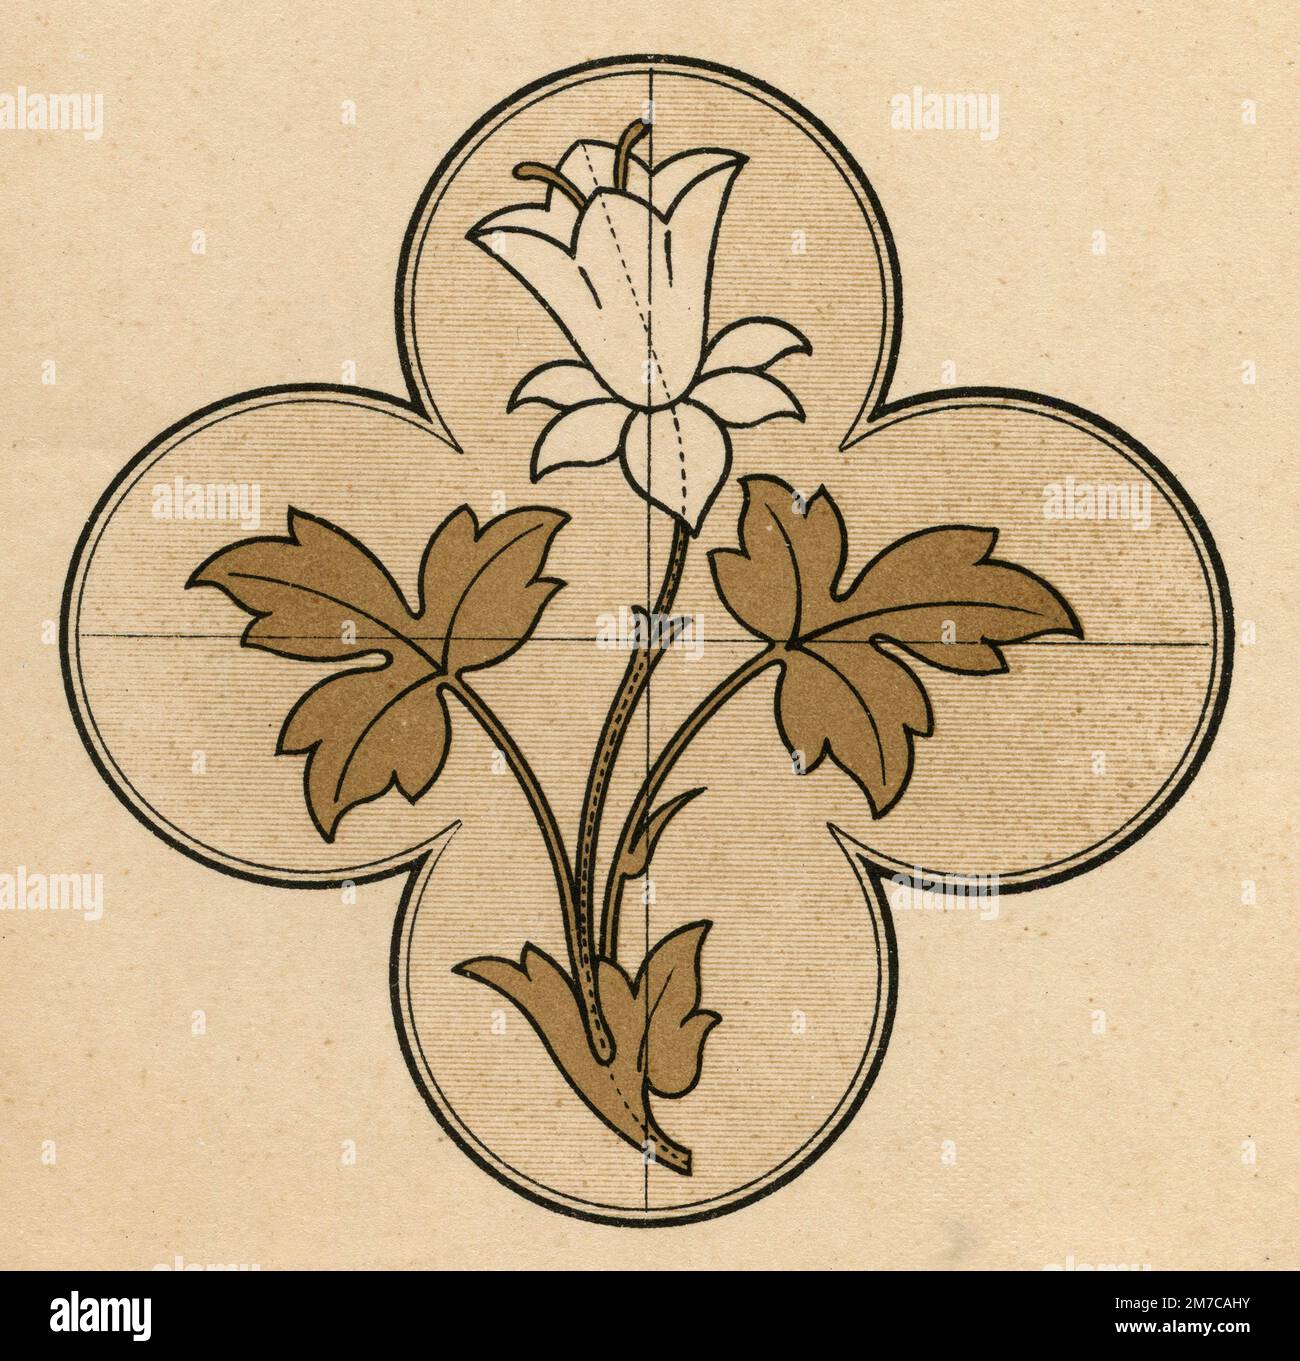 Feuilles et fleurs stylisées de formes géométriques pour une école de dessin, Italie 1930s Banque D'Images